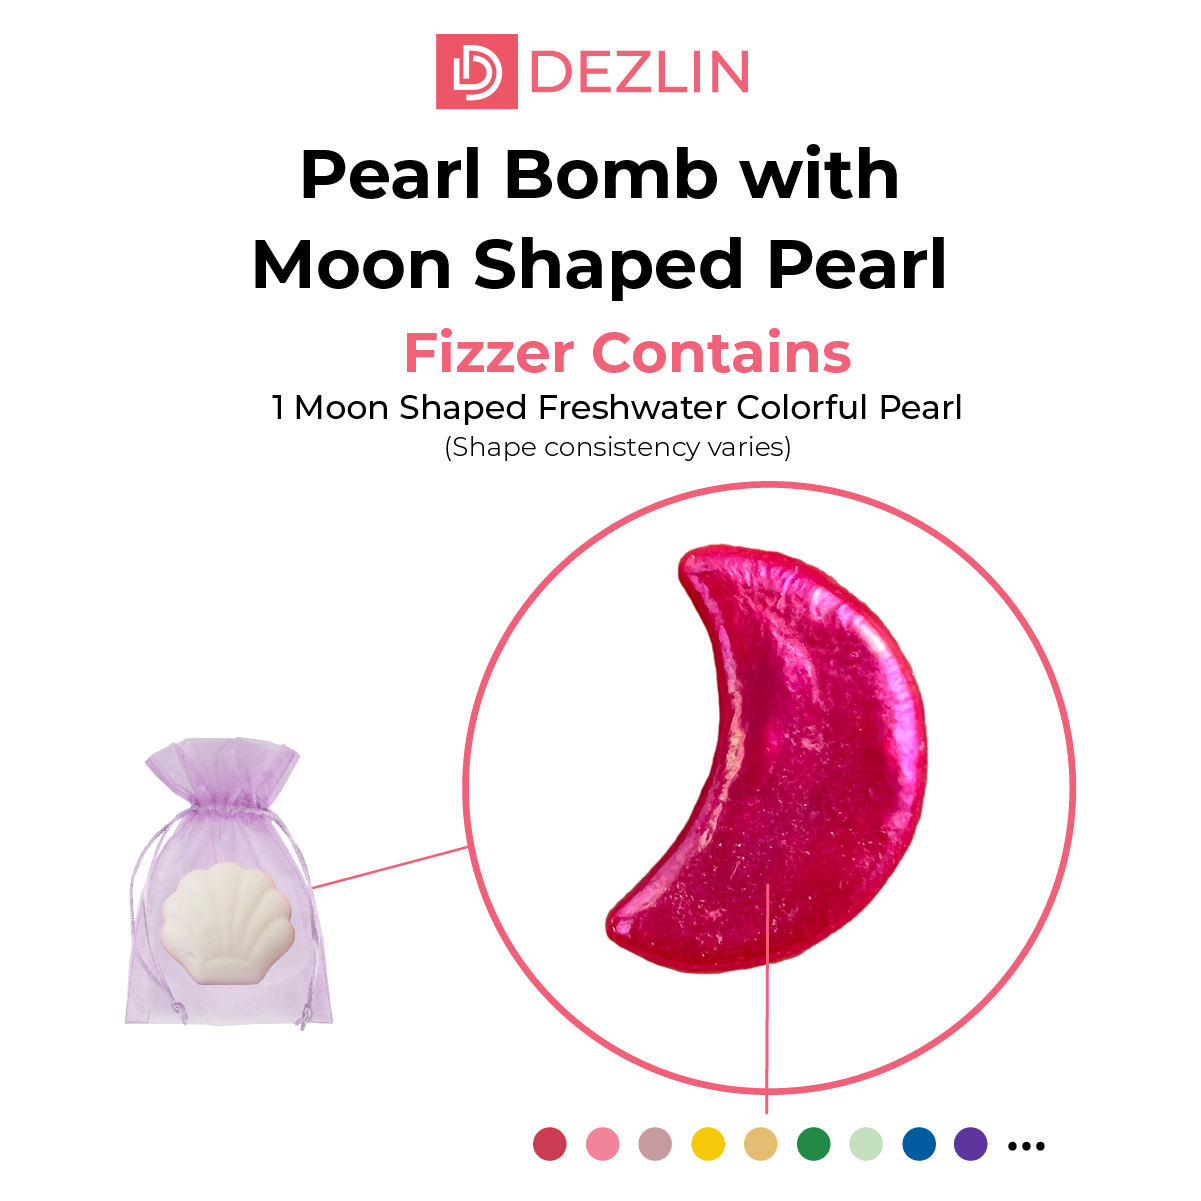 Bomba de perlas con perla en forma de luna